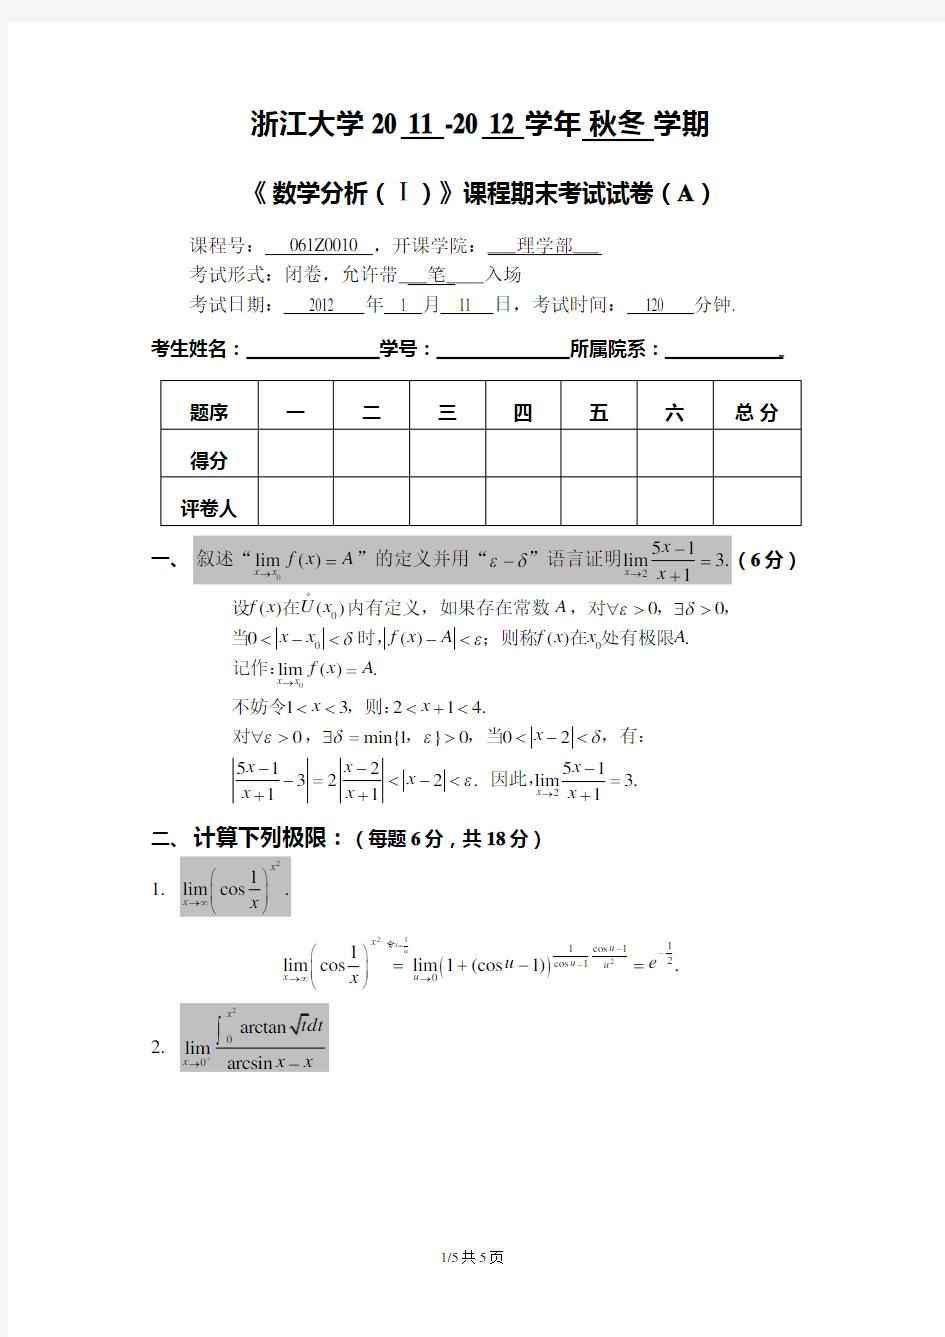 浙江大学2011-2012数学分析(1)-试卷及答案(baidu)